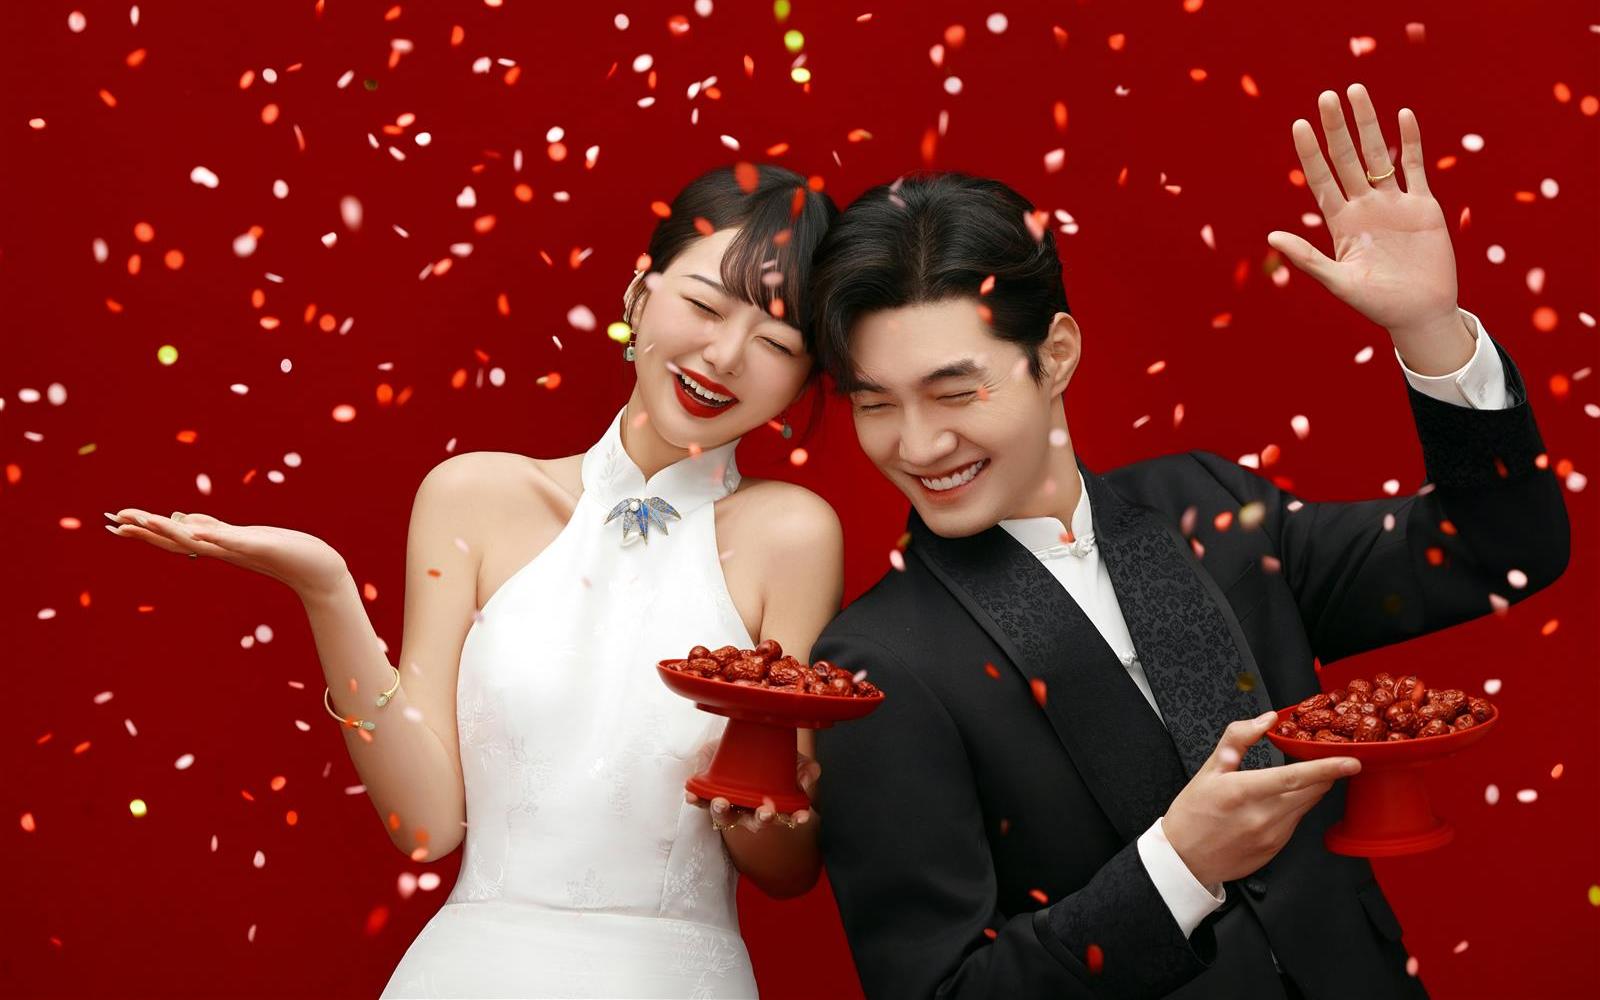 全家都夸的新中式喜嫁婚纱照❤️也太甜了叭‼️